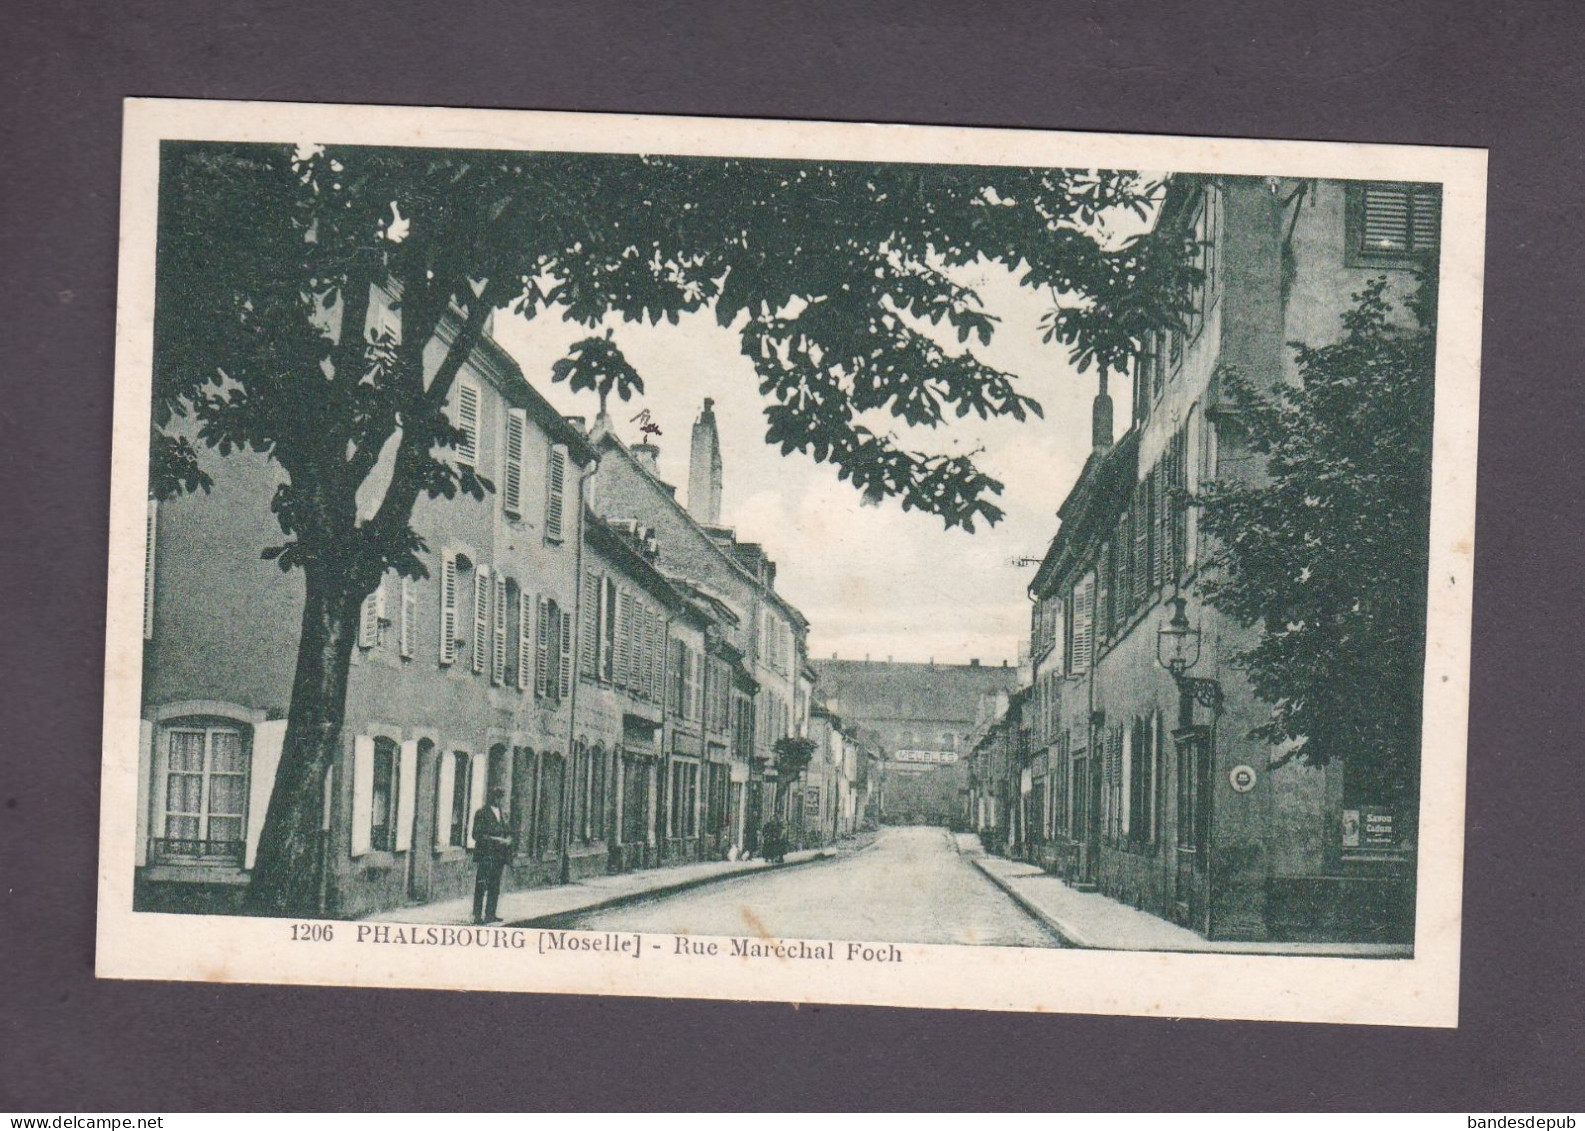 Vente Immediate Phalsbourg Moselle Rue Marechal Foch (Ed. F.K.S. 58146) - Phalsbourg